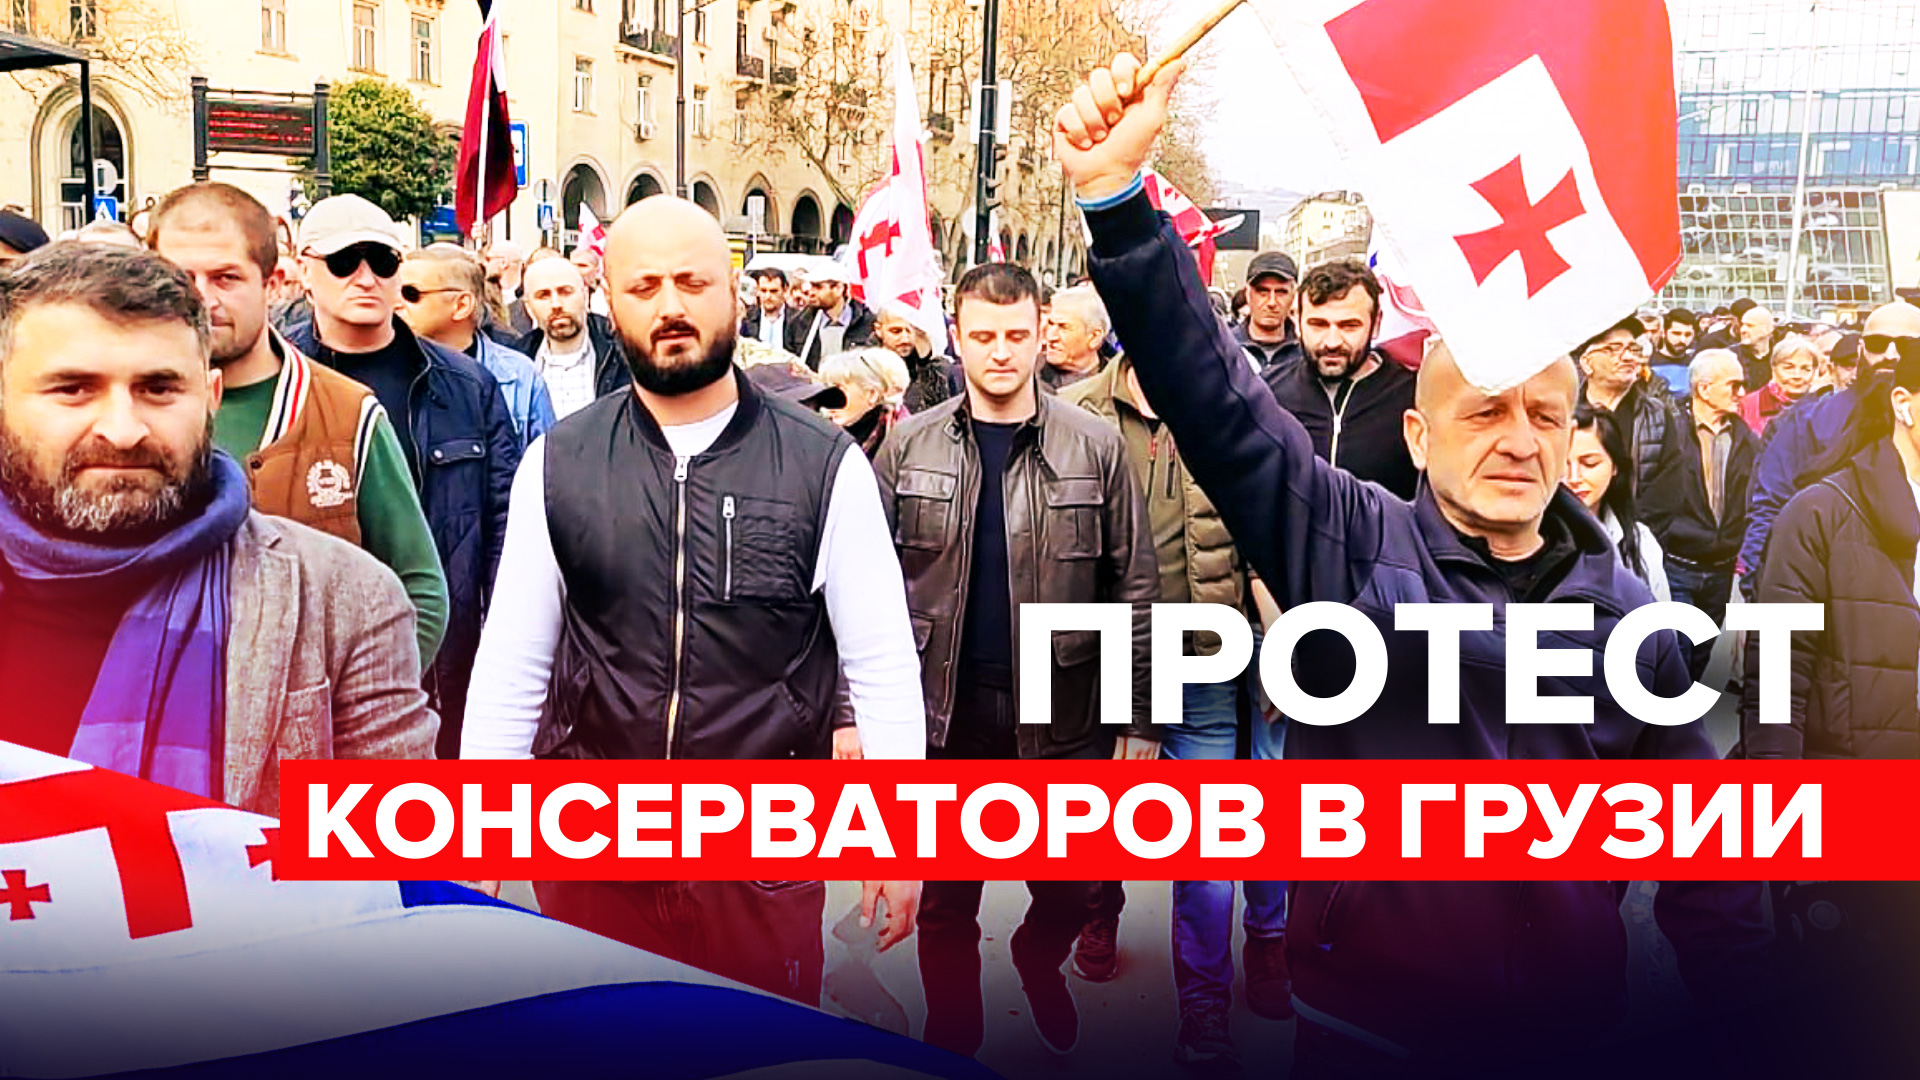 В Тбилиси проходит шествие партии консерваторов — видео